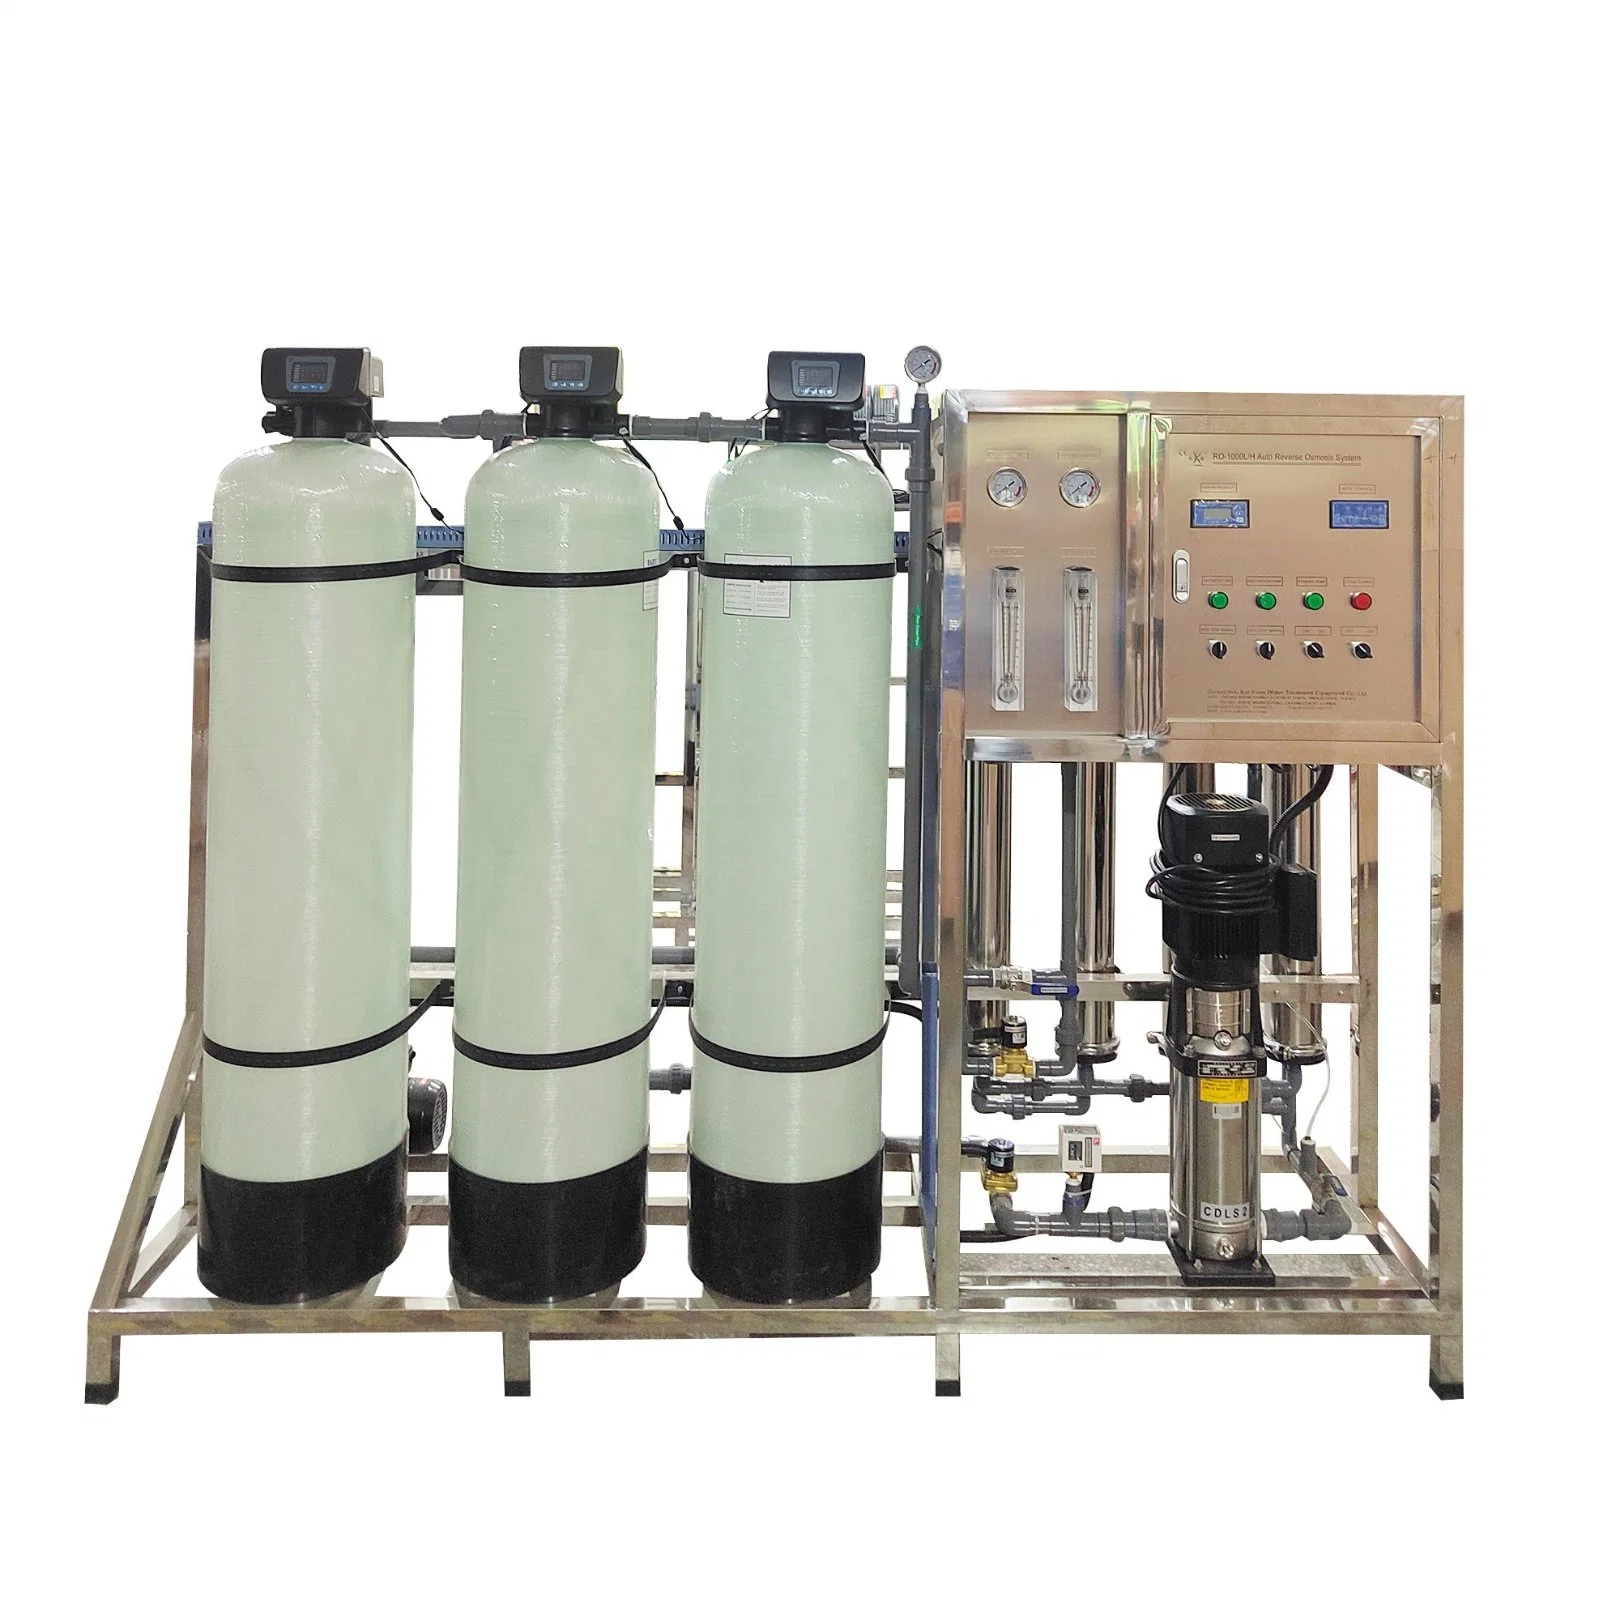 Système de filtration d'eau par osmose inverse de 1000lph, purificateur d'eau, équipement de traitement de l'eau par désalinisation, système de purification de l'eau, usine de traitement de l'eau potable RO.